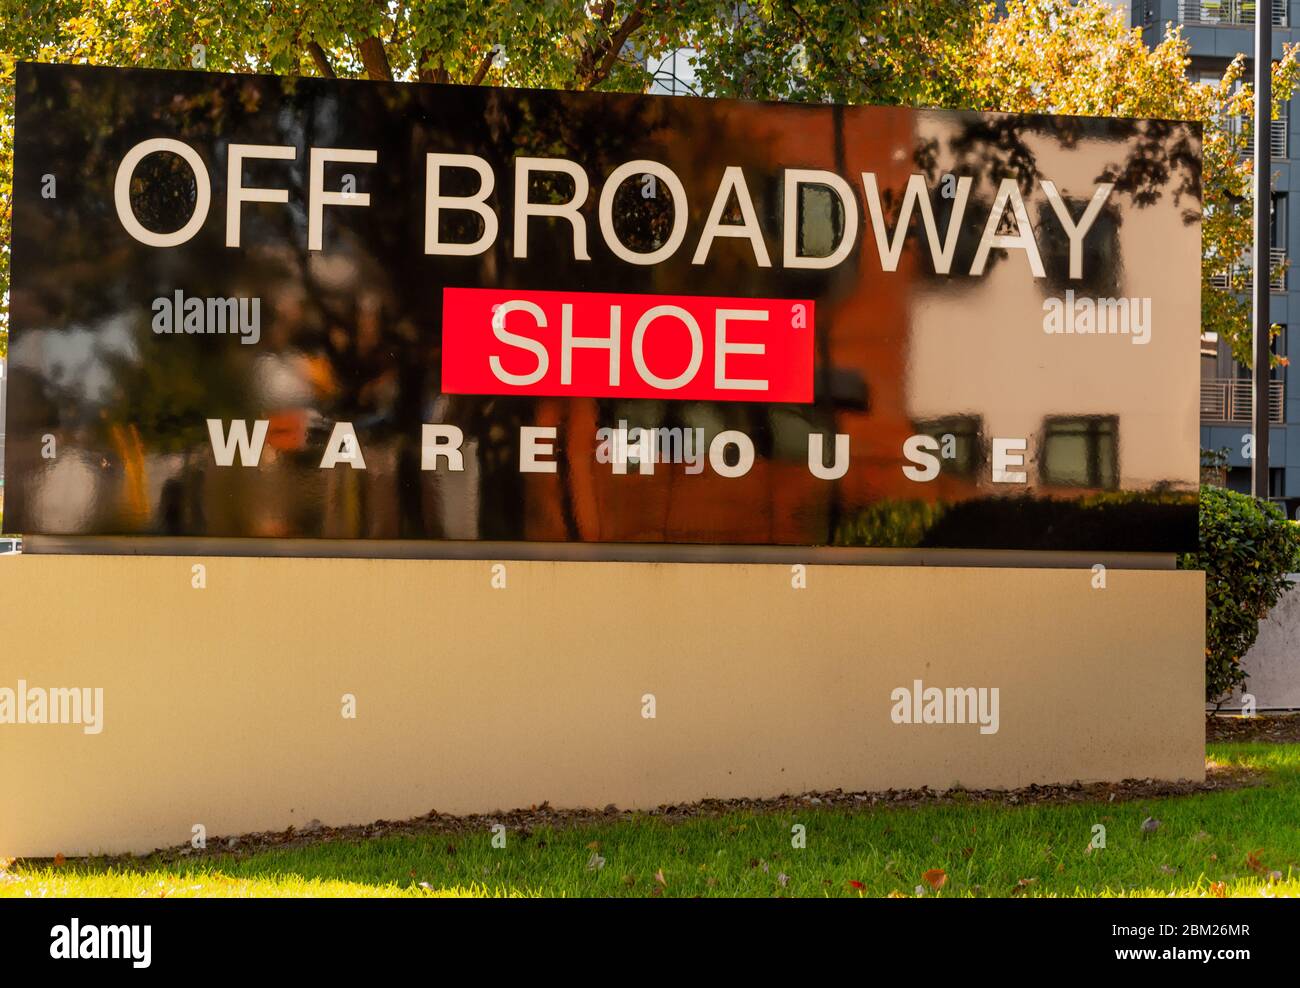 Charlotte, NC/USA - Novenber 9, 2019: Tiro medio al aire libre de rojo, blanco y negro 'Off Broadway Shoe Warehouse' signo con Marca en letras blancas y. Foto de stock